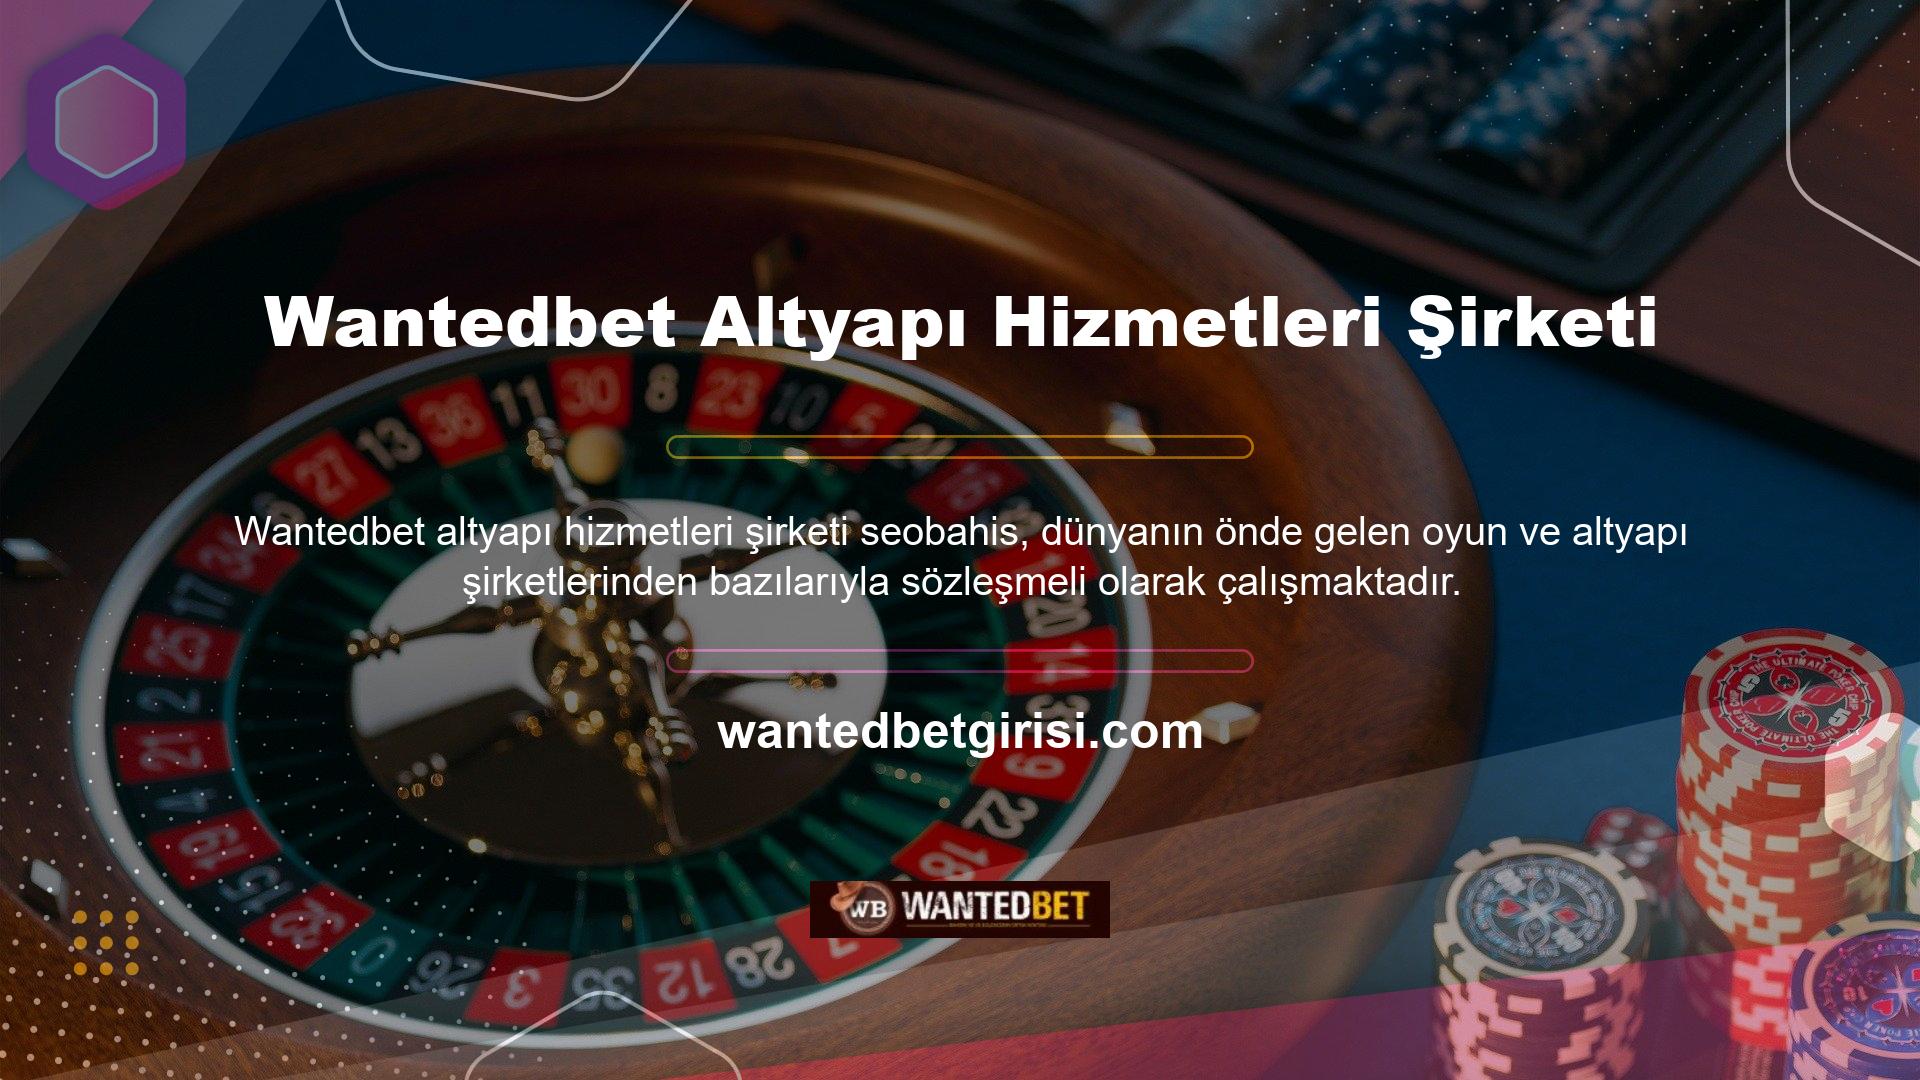 Bu sitede ayrıca Wantedbet slot oyunu ürünleri sunan çok sayıda altyapı şirketi bulunmaktadır